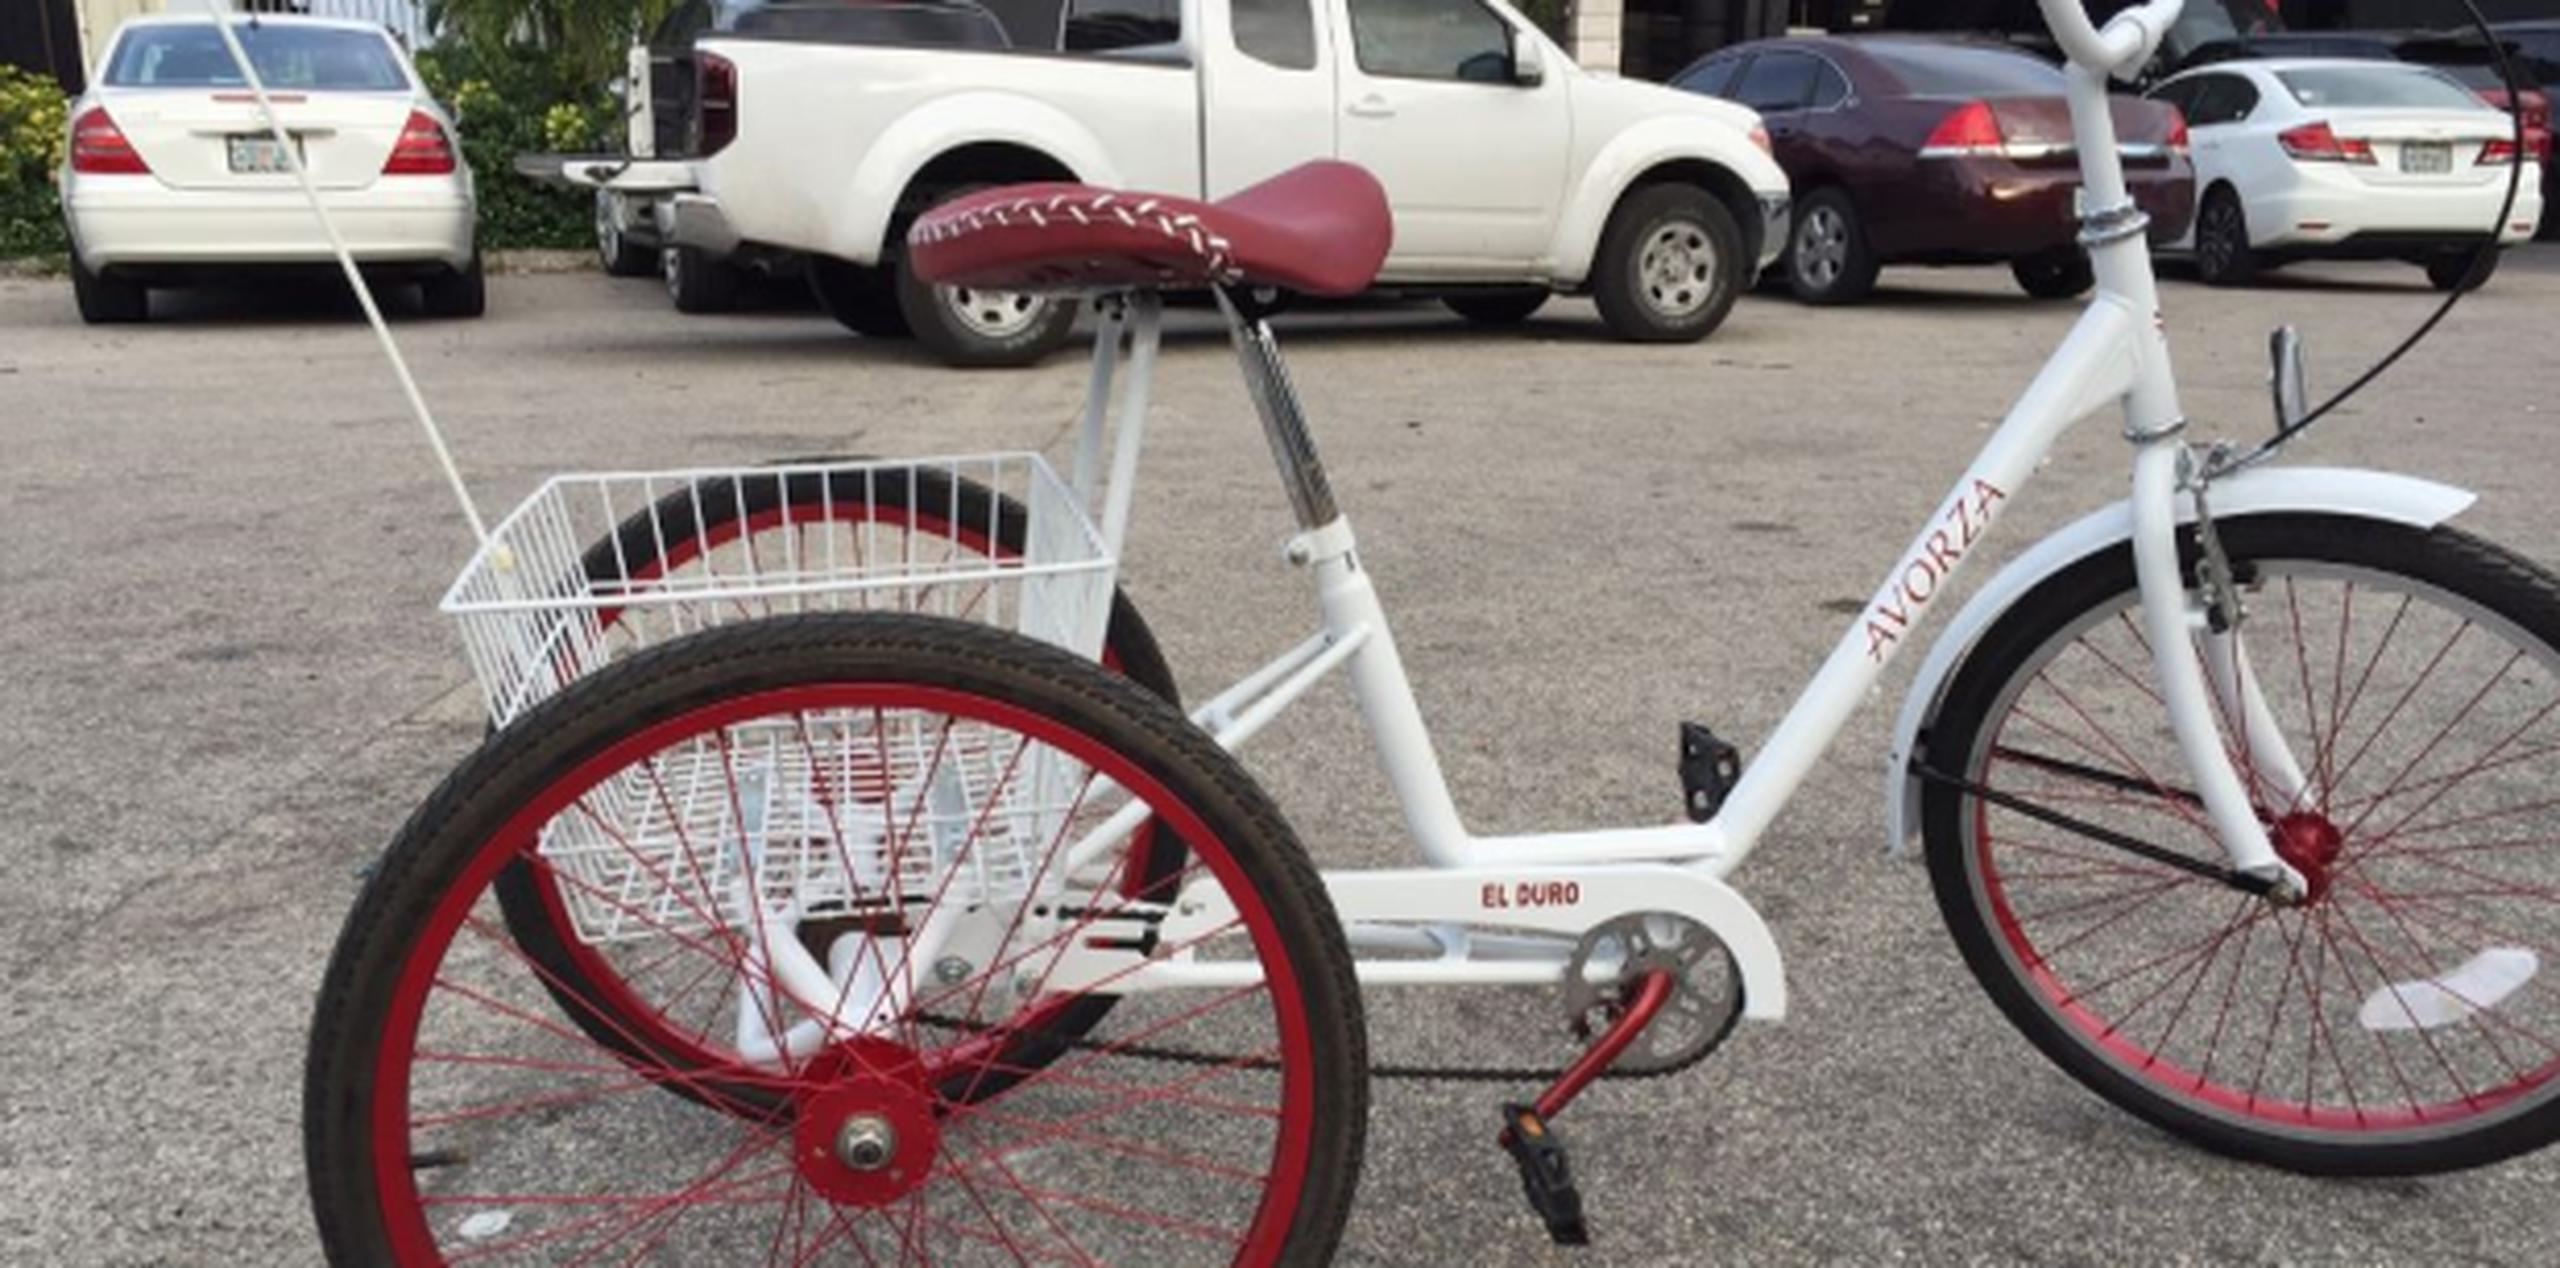 Gastó unos 1,000 dólares en la personalización de la bicicleta. (AP)